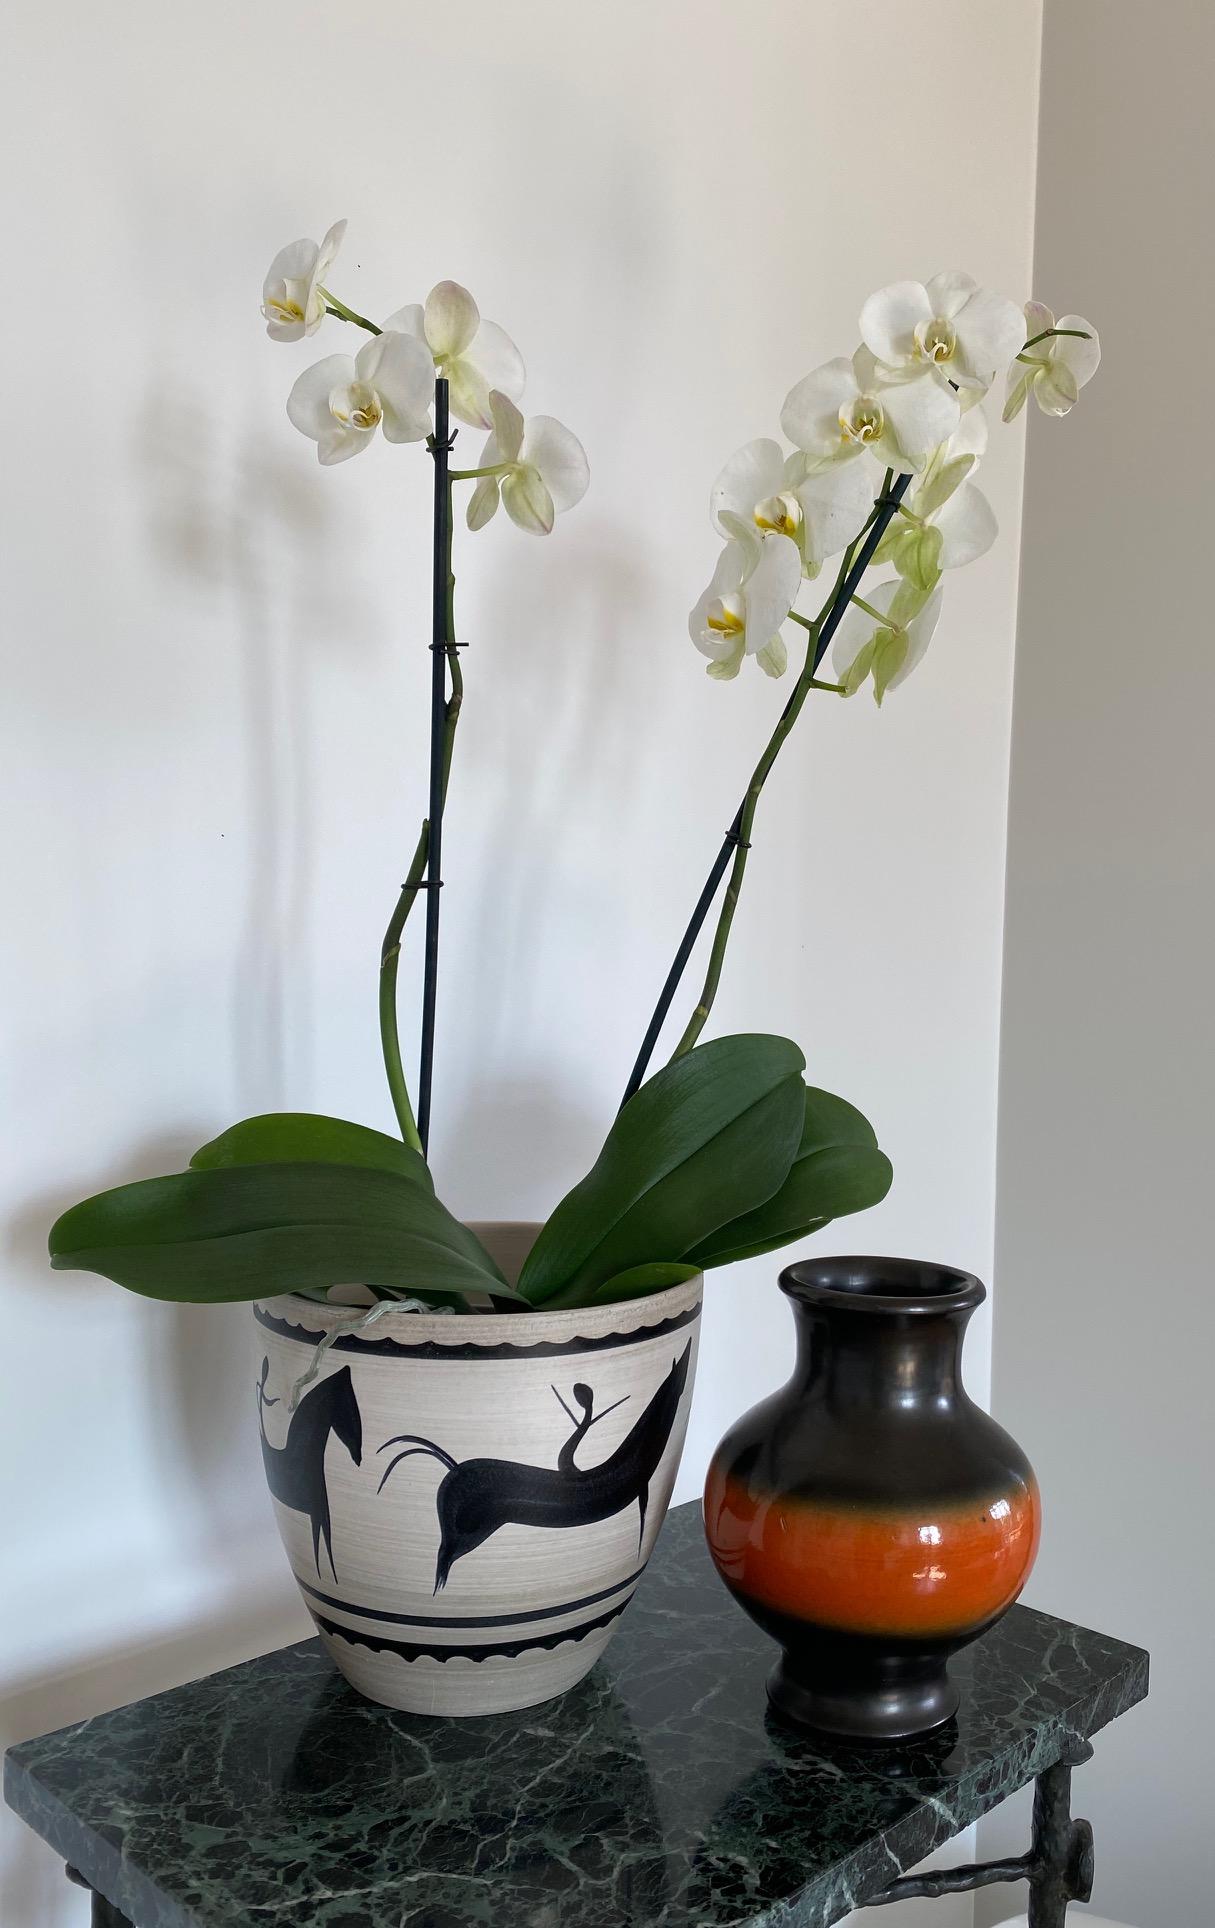 Pol Chambost Black & Orange Ceramic Vase, France 1950s For Sale 1